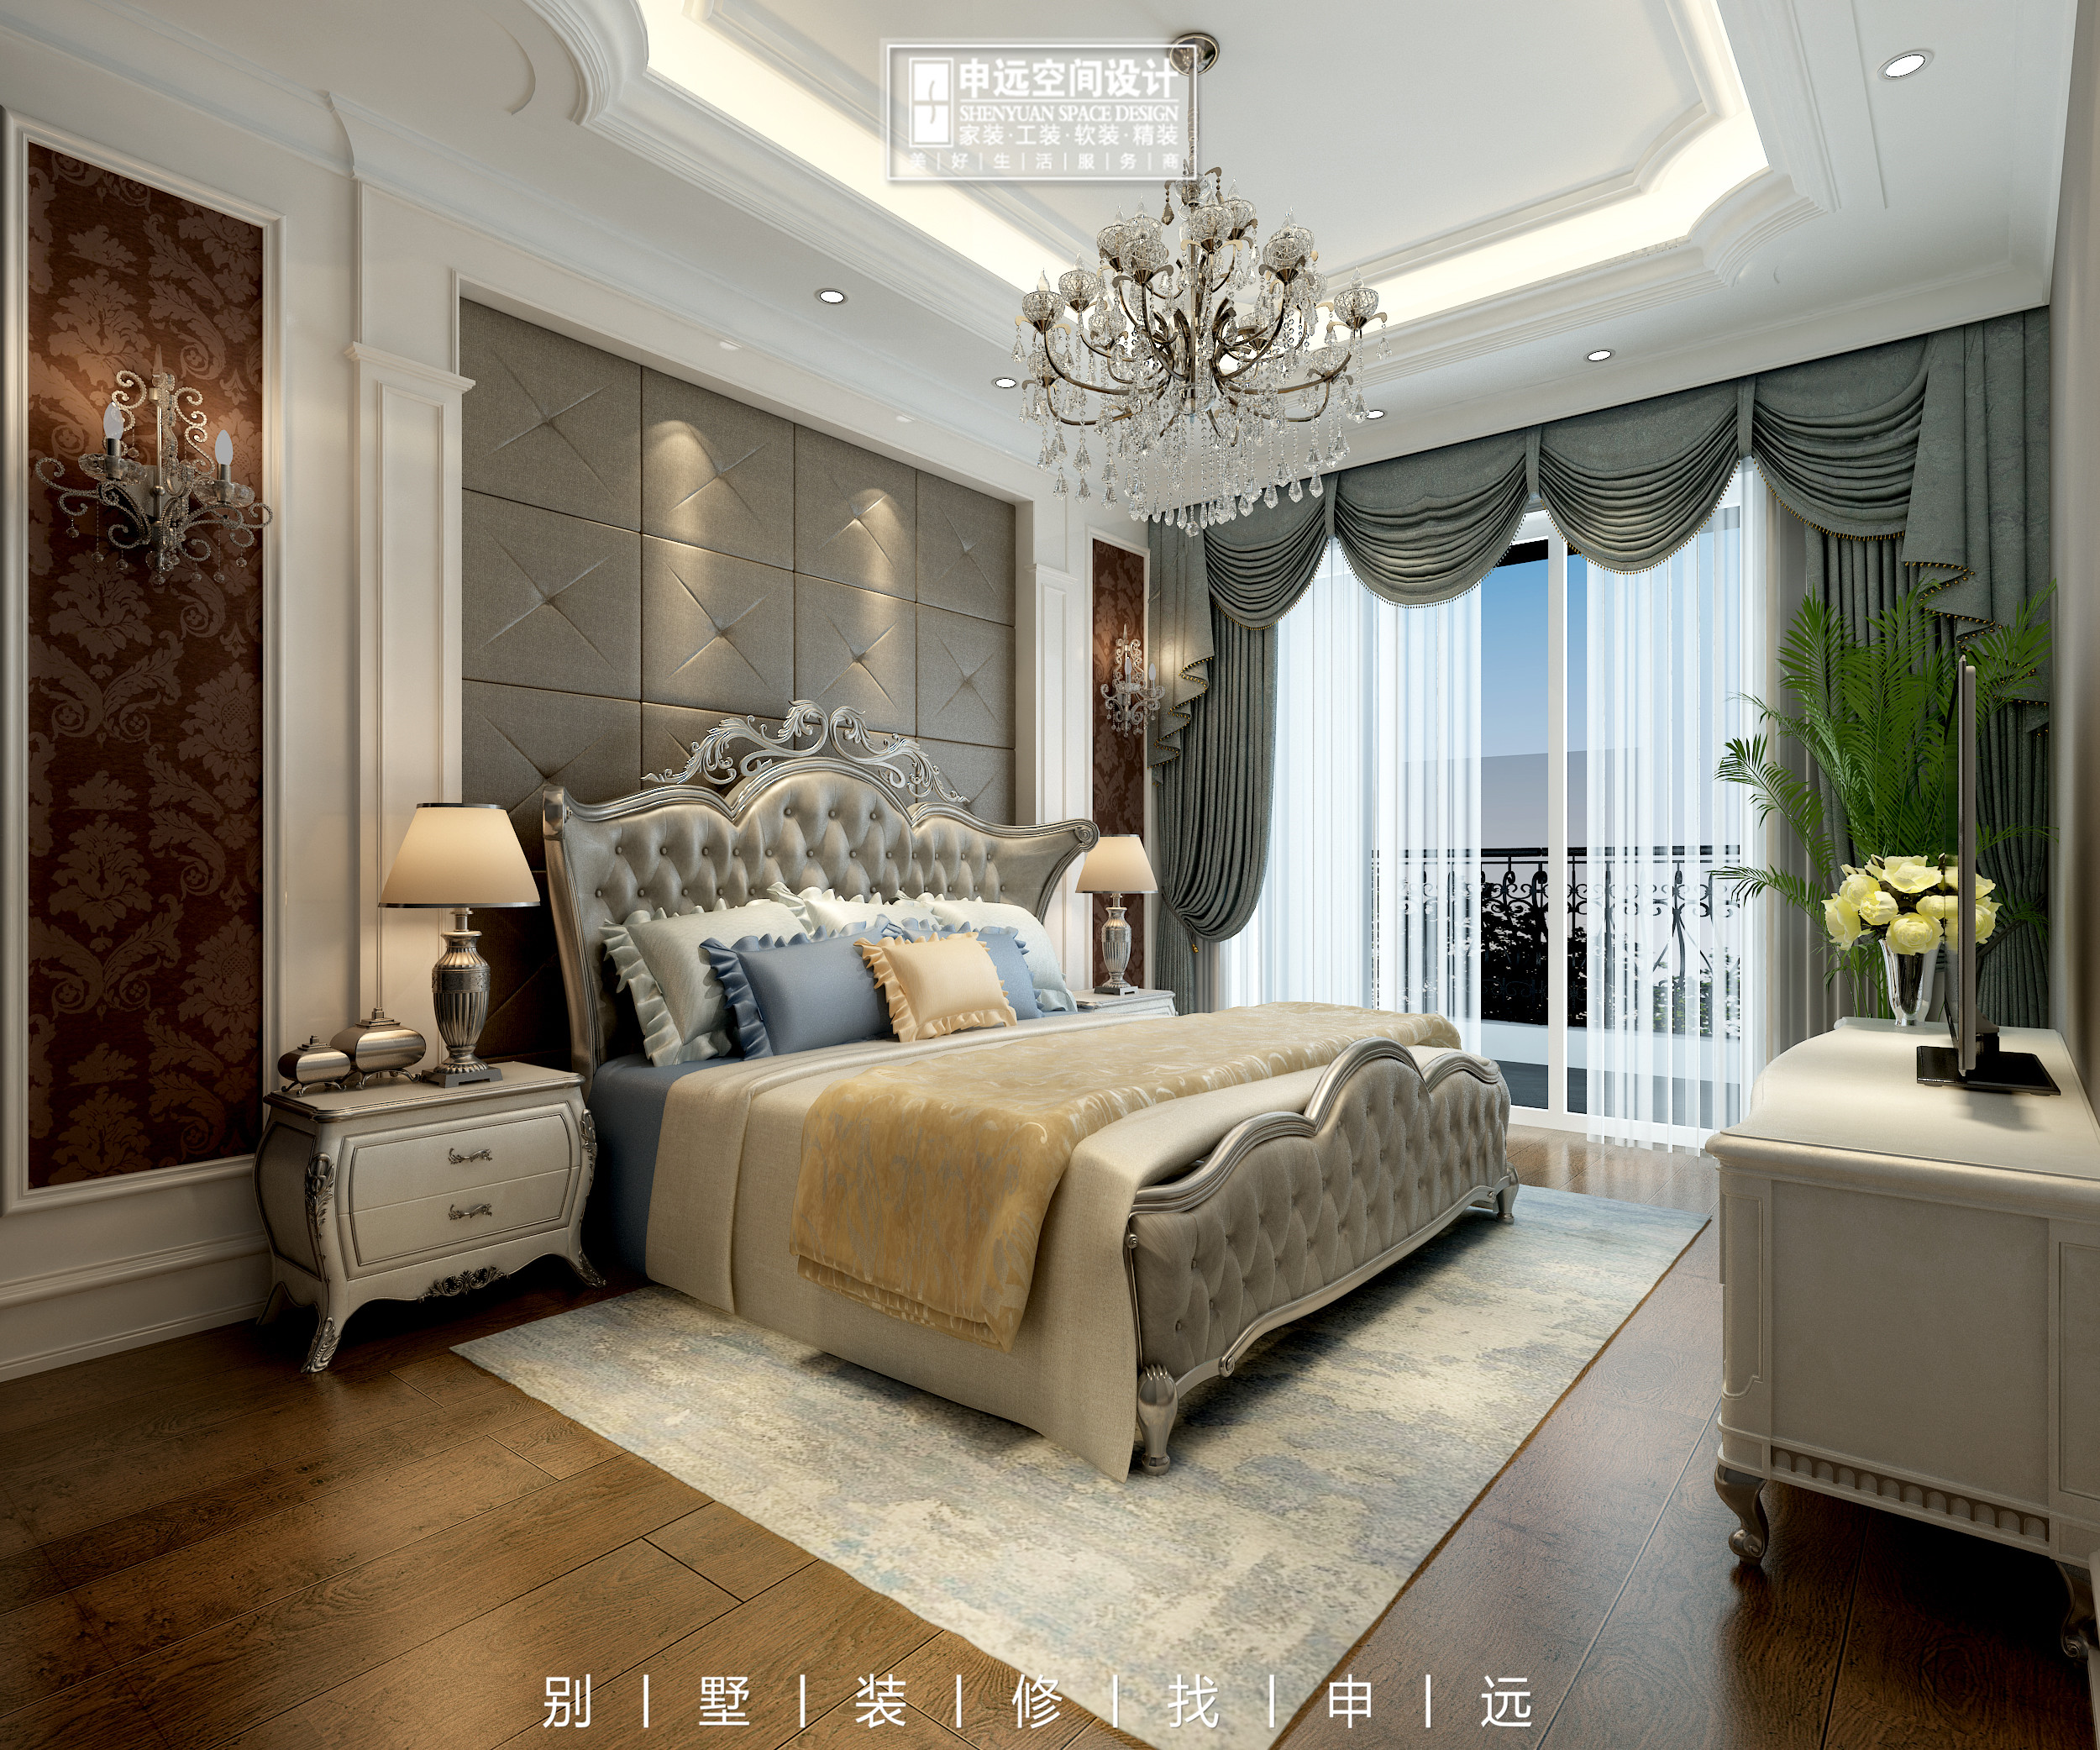 别墅装修 申远 北京申远 卧室图片来自申远空间设计北京分公司在北京申远空间设计-别墅装修的分享